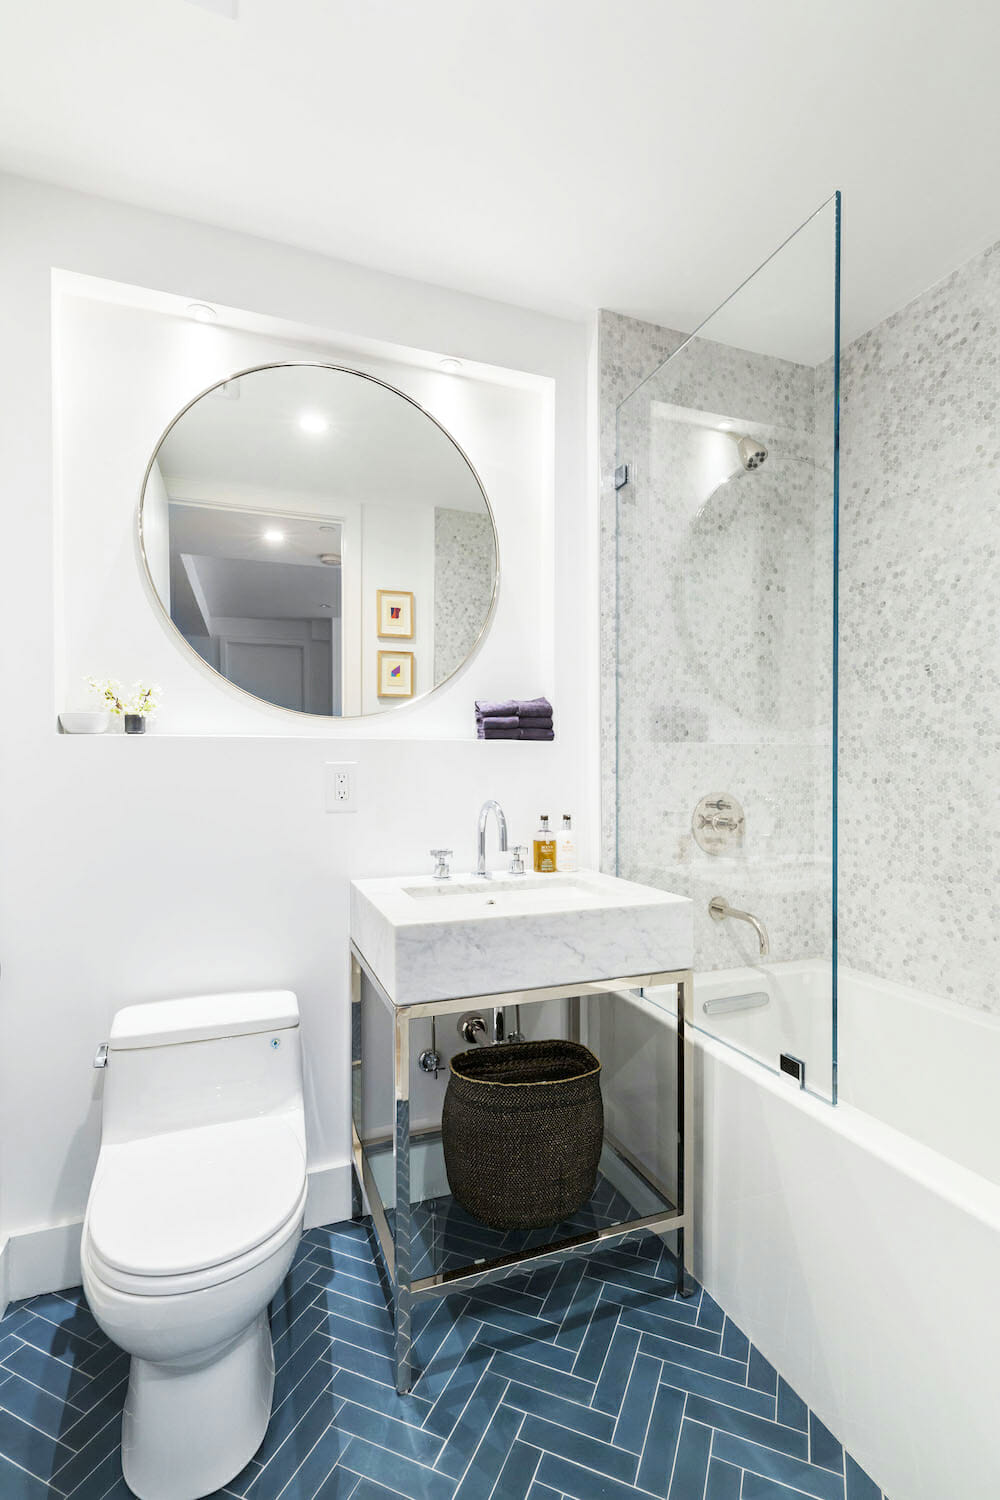 bathroom with blue cement tile in herringbone pattern